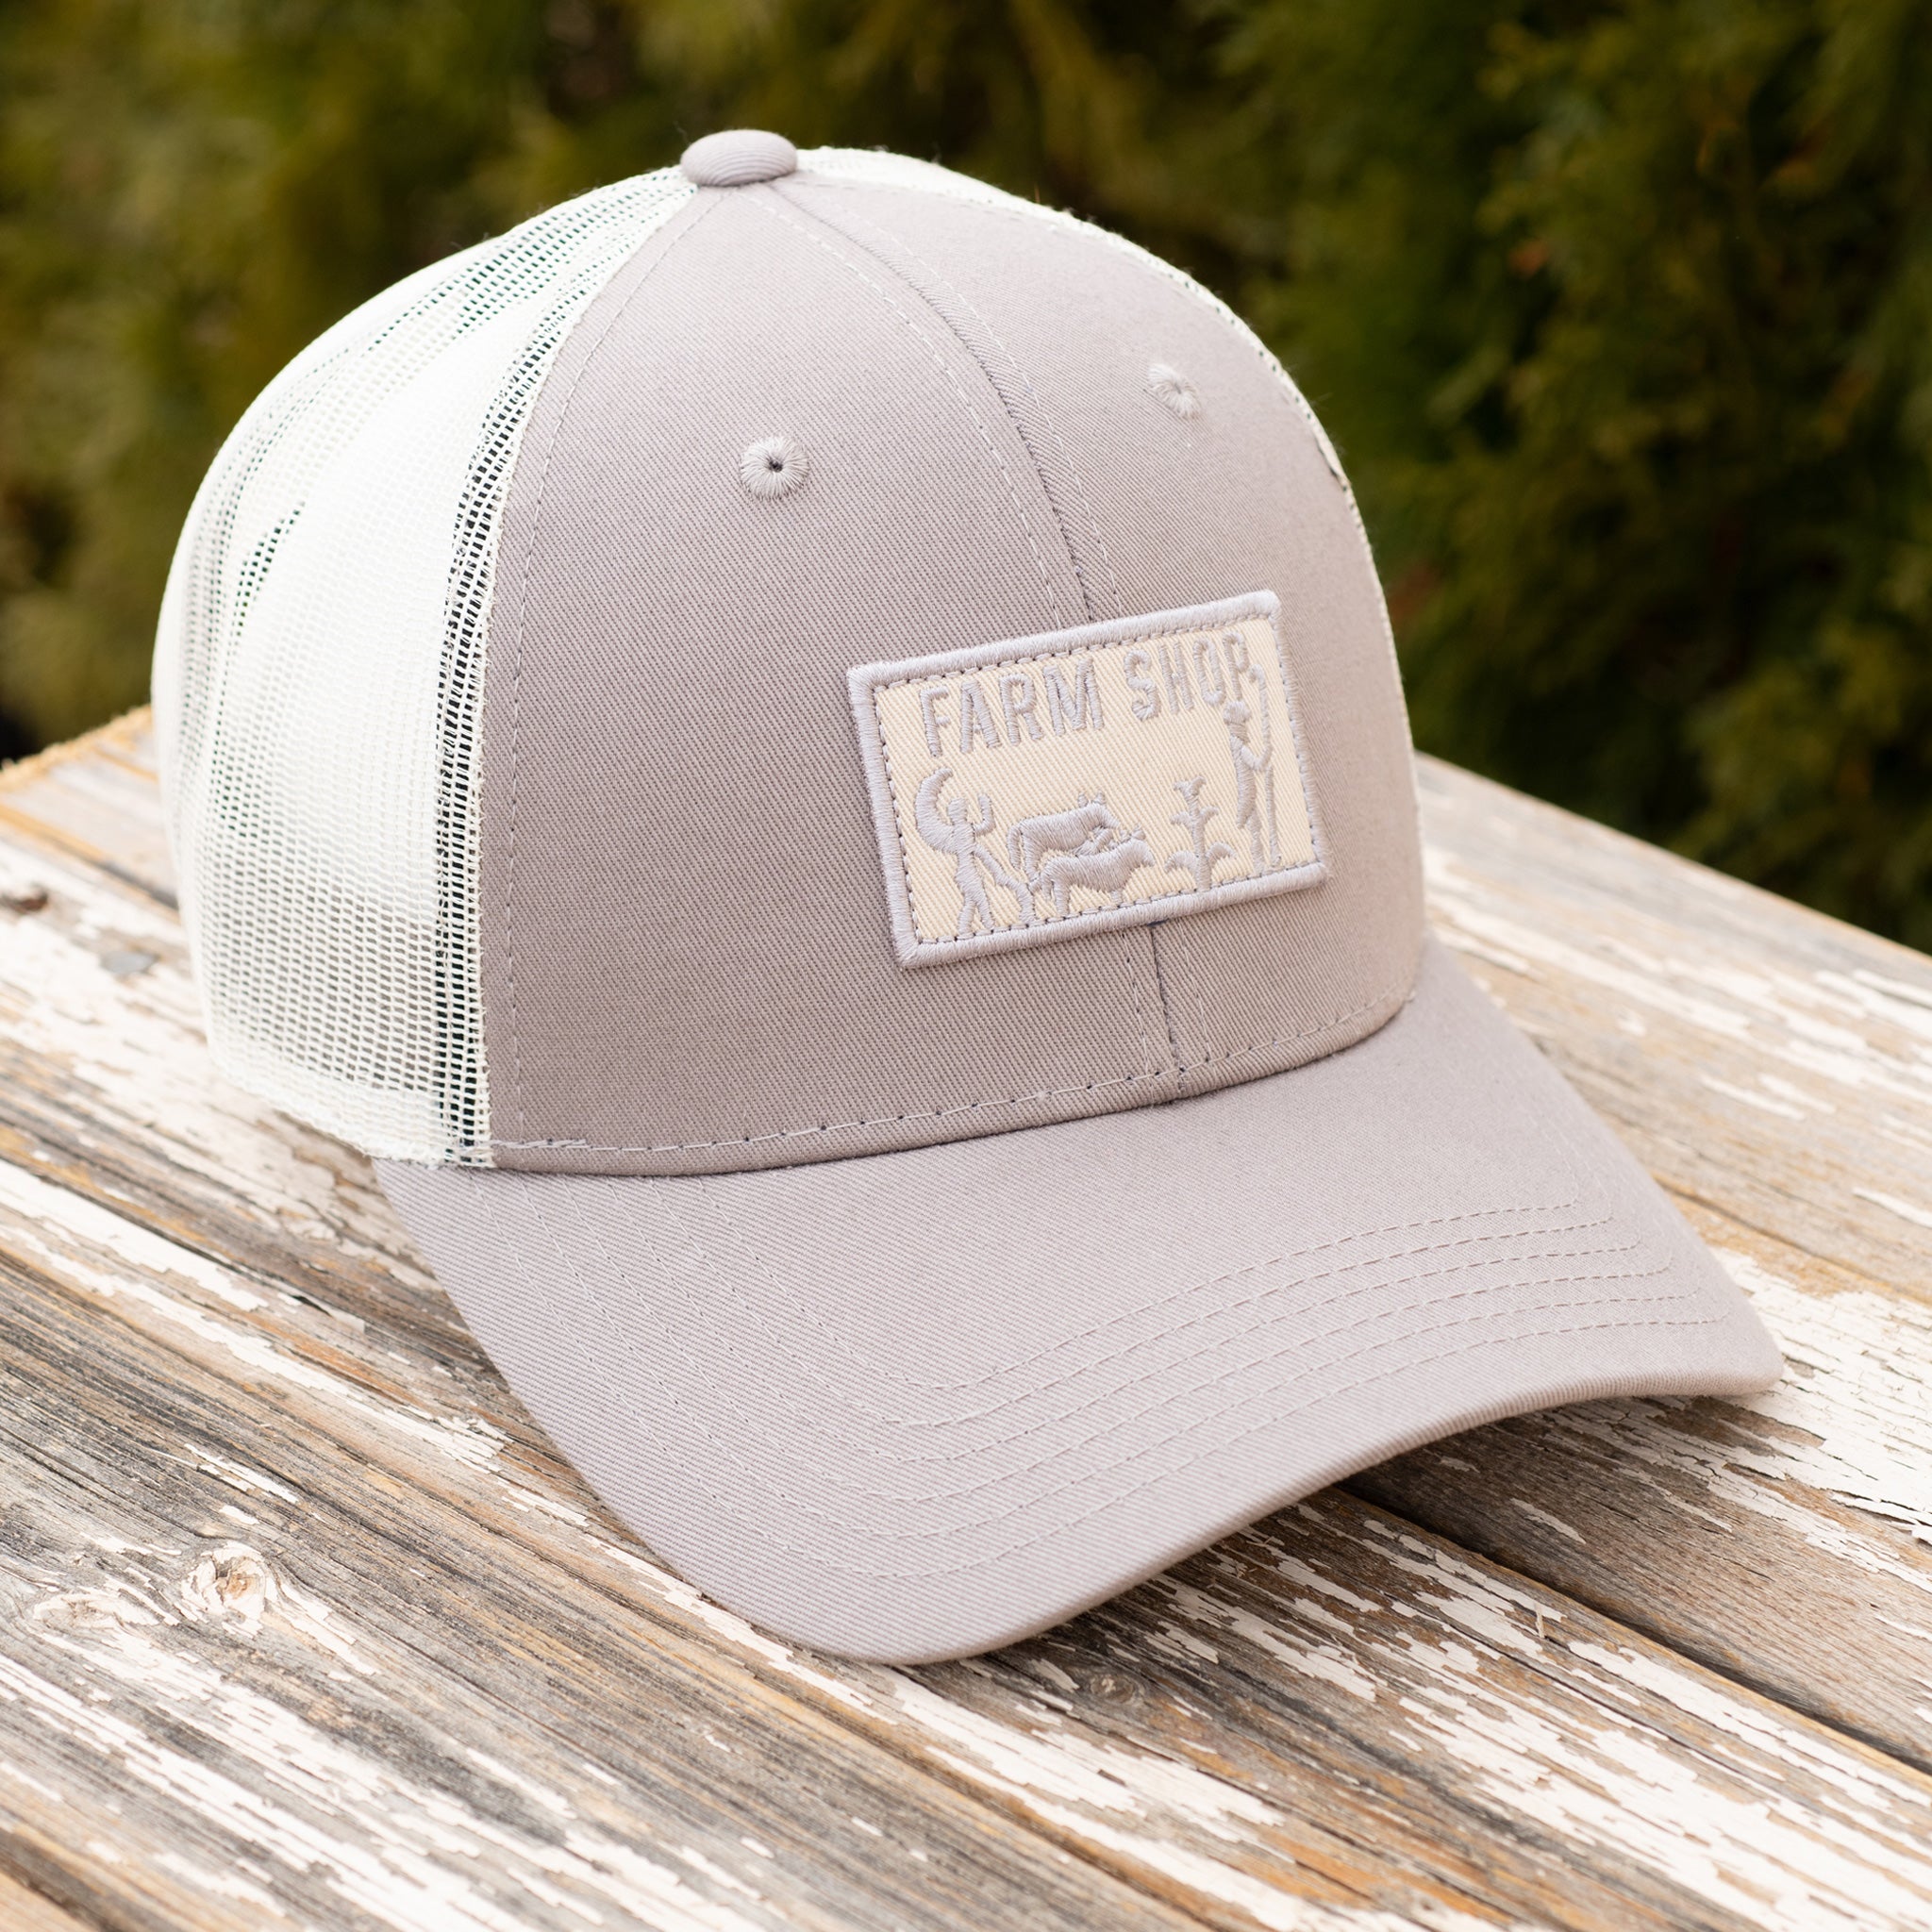 Los Poblanos Farm Shop Patch Hats - Grey/Natural